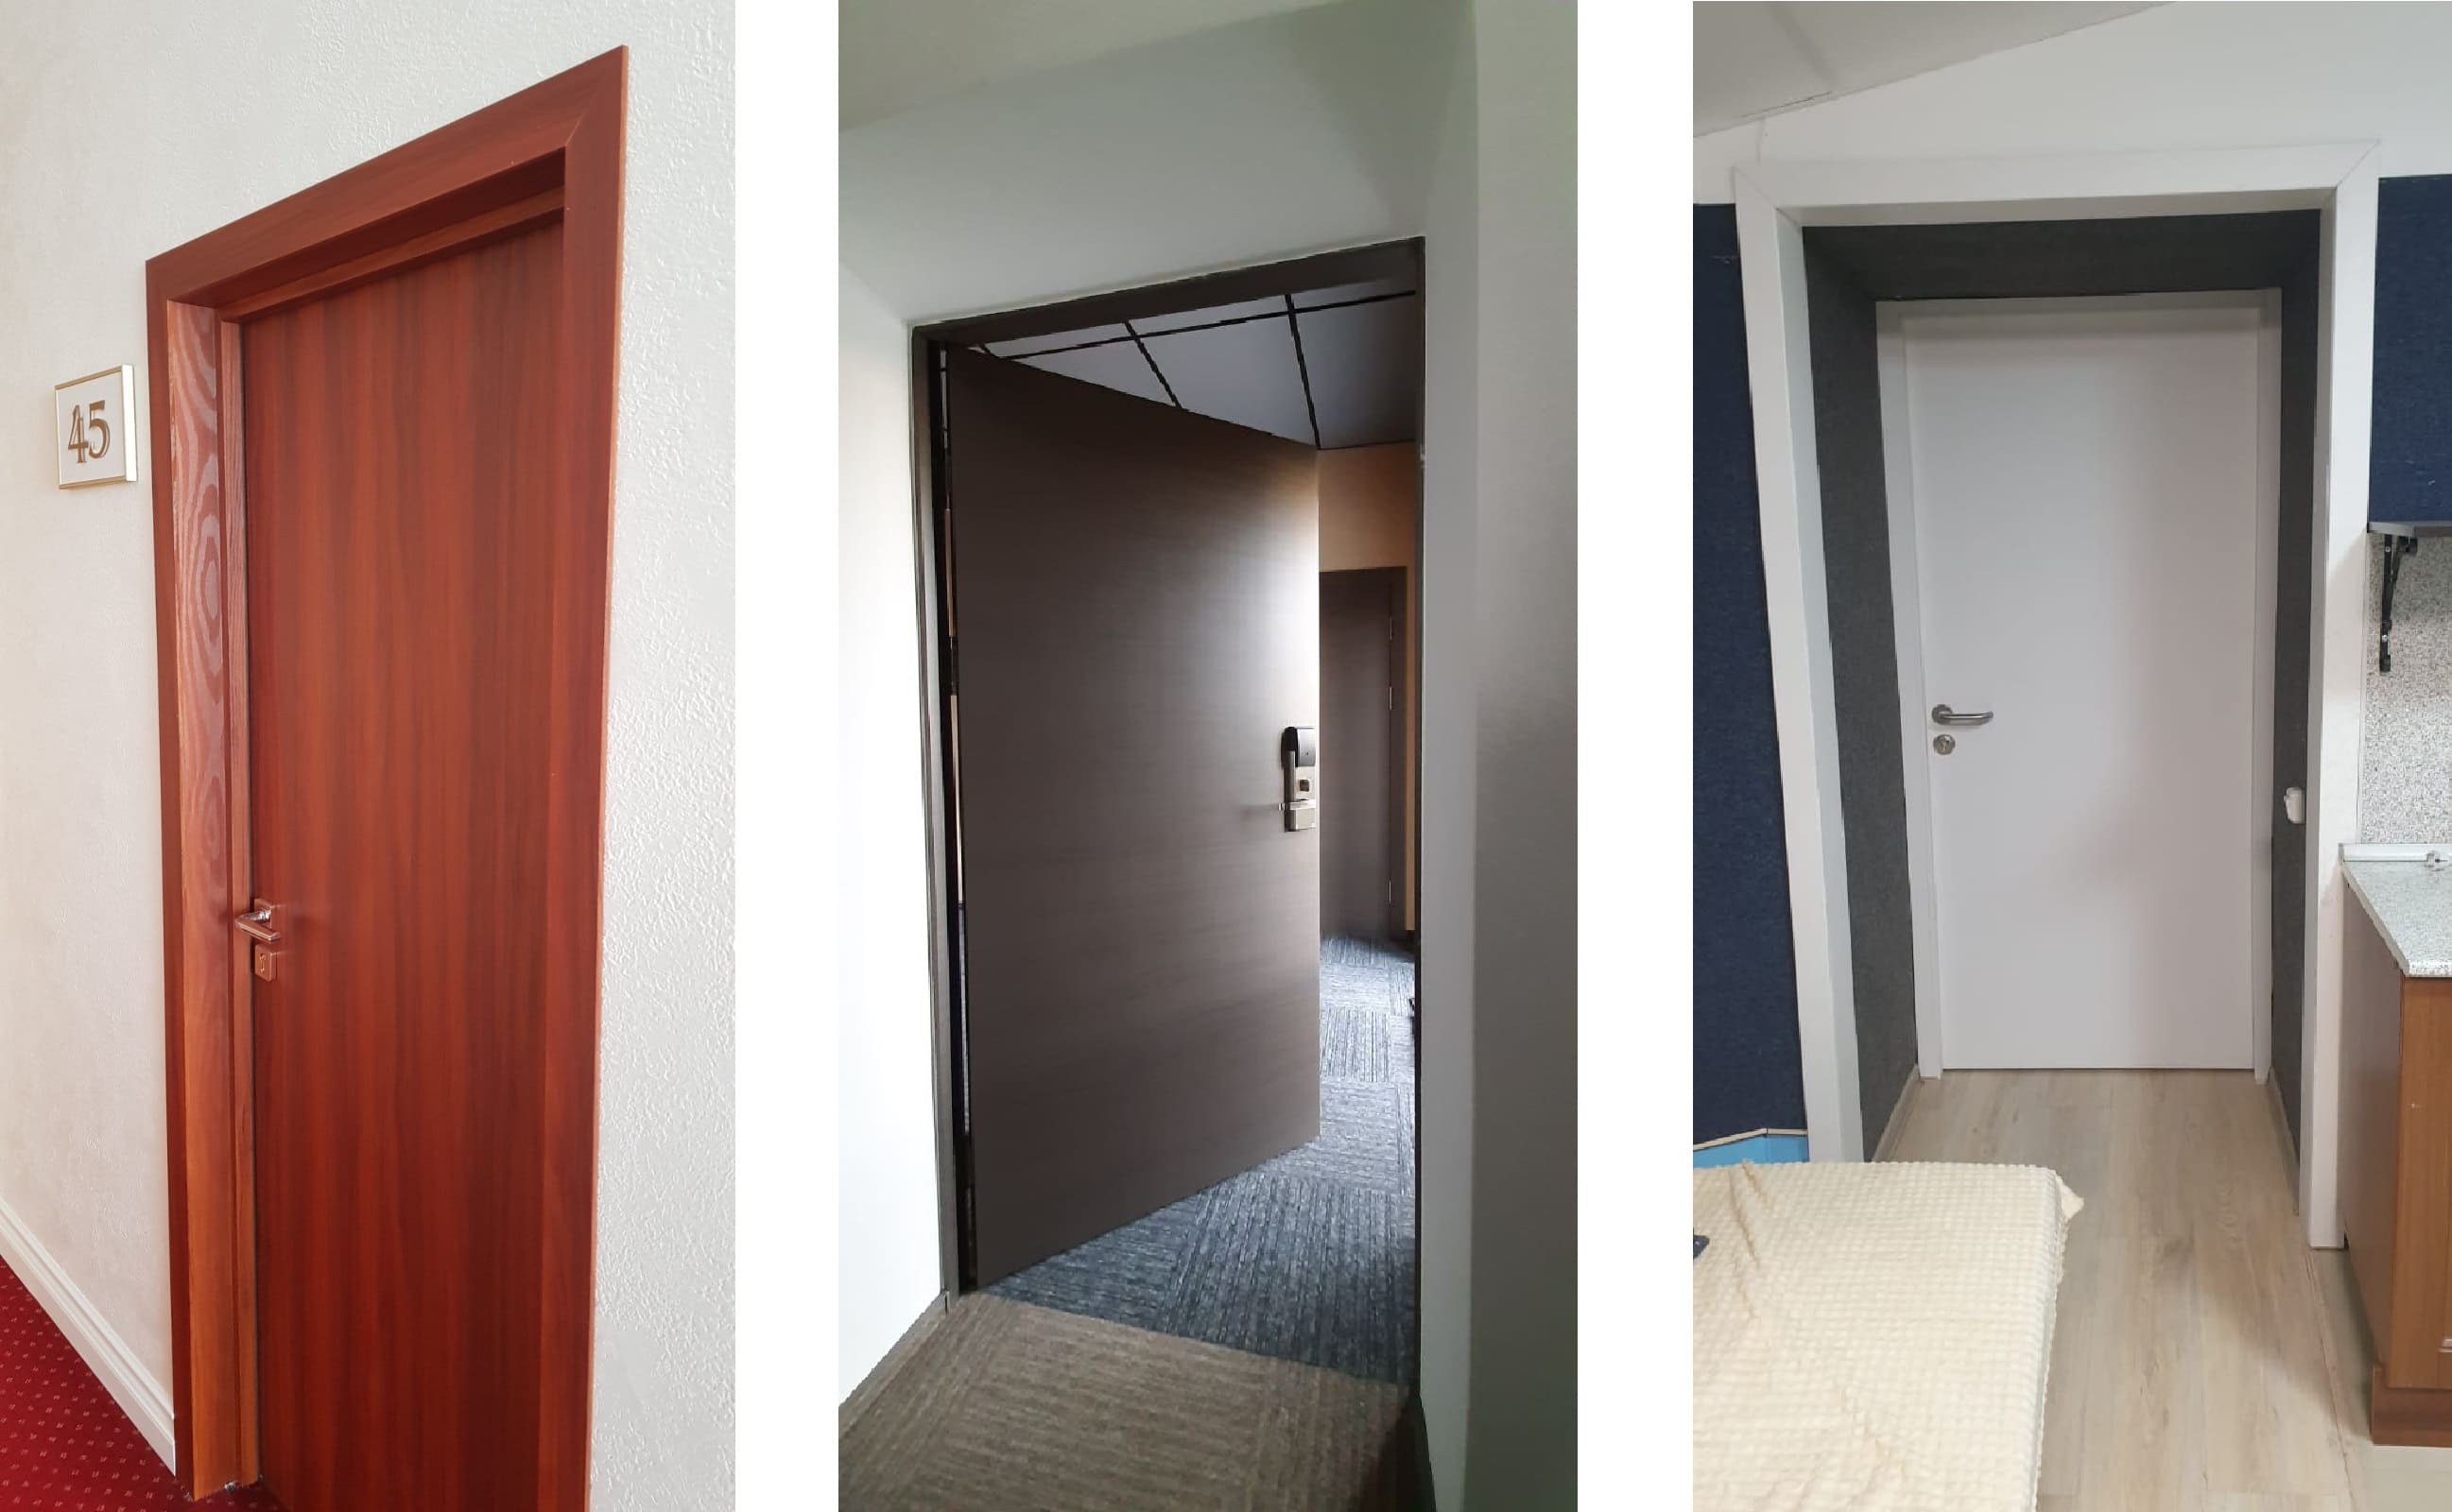 Двери в номерах отелей, от производителя "Двери Остиум"